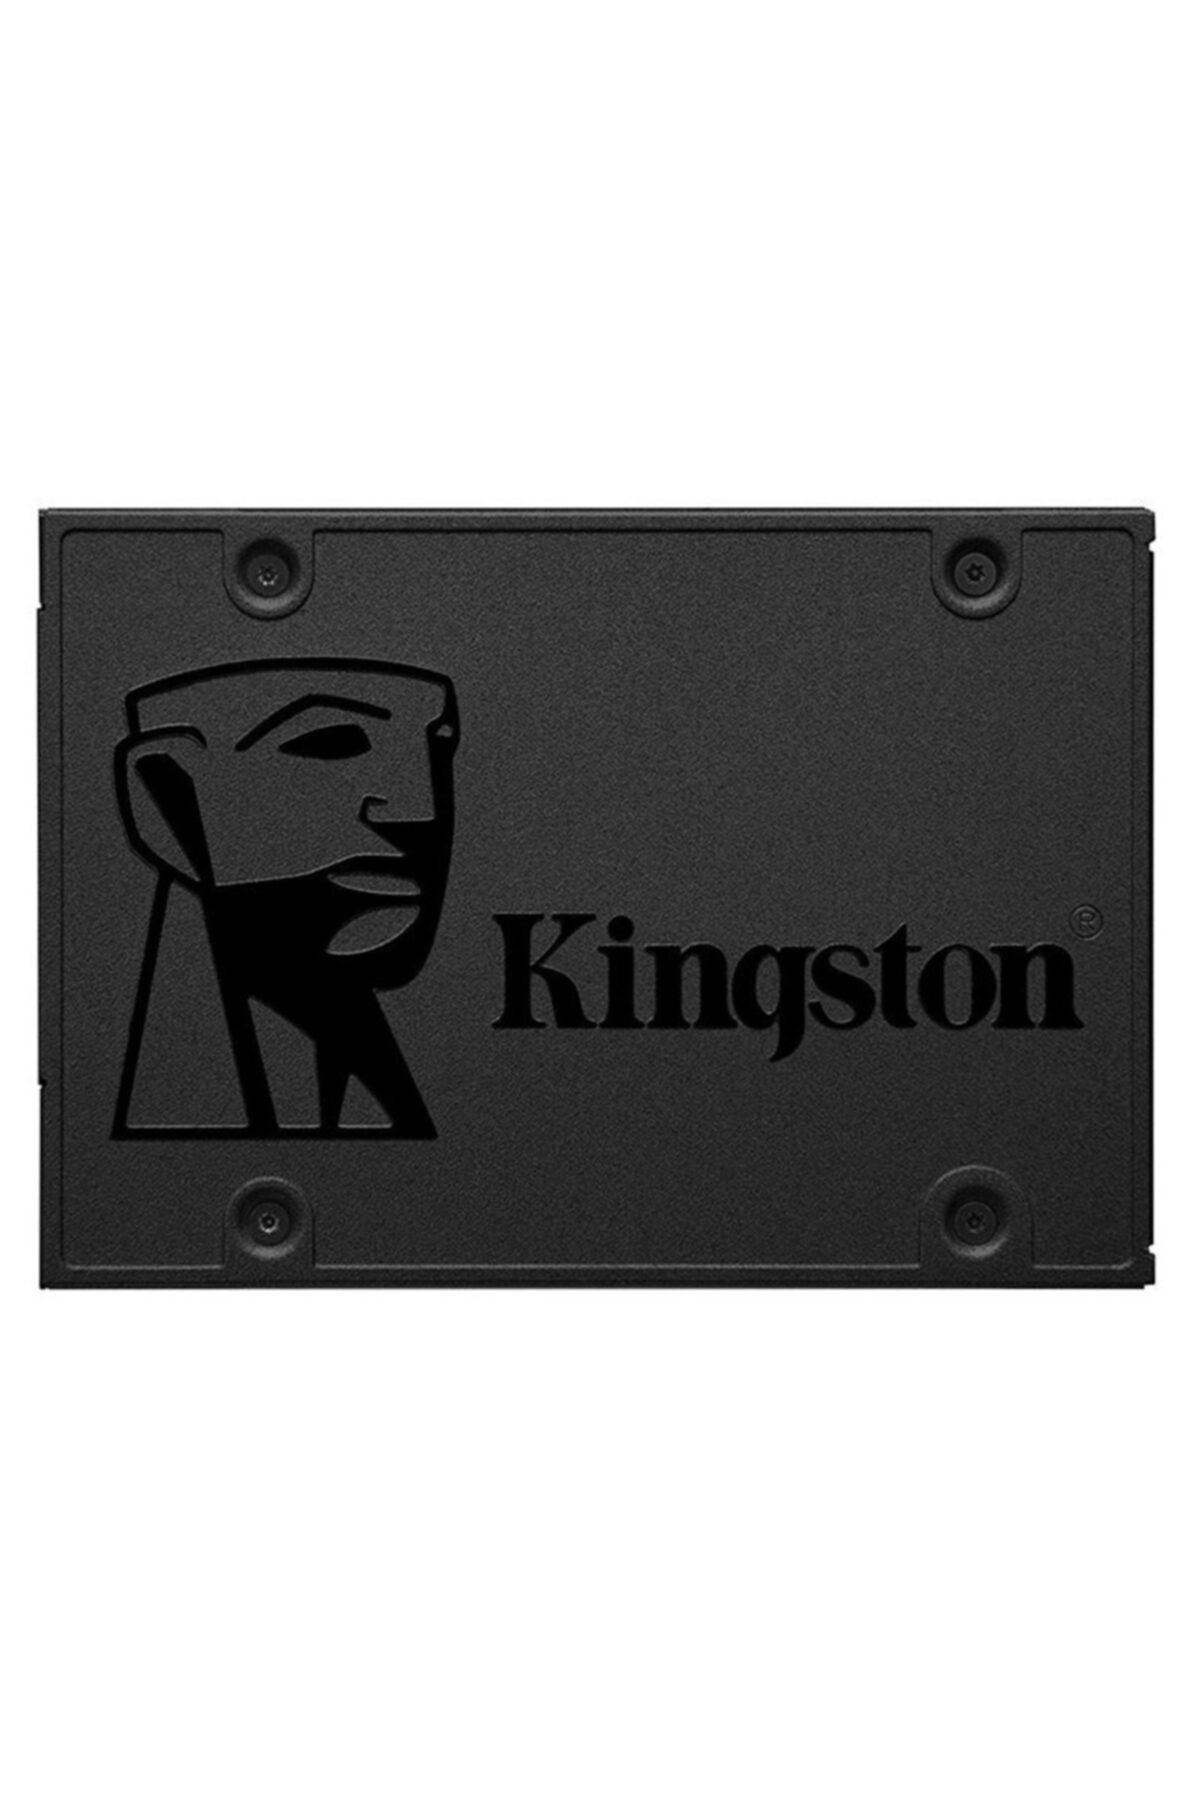 Kingston 240gb A400 500/350mb Sa400s37/240g